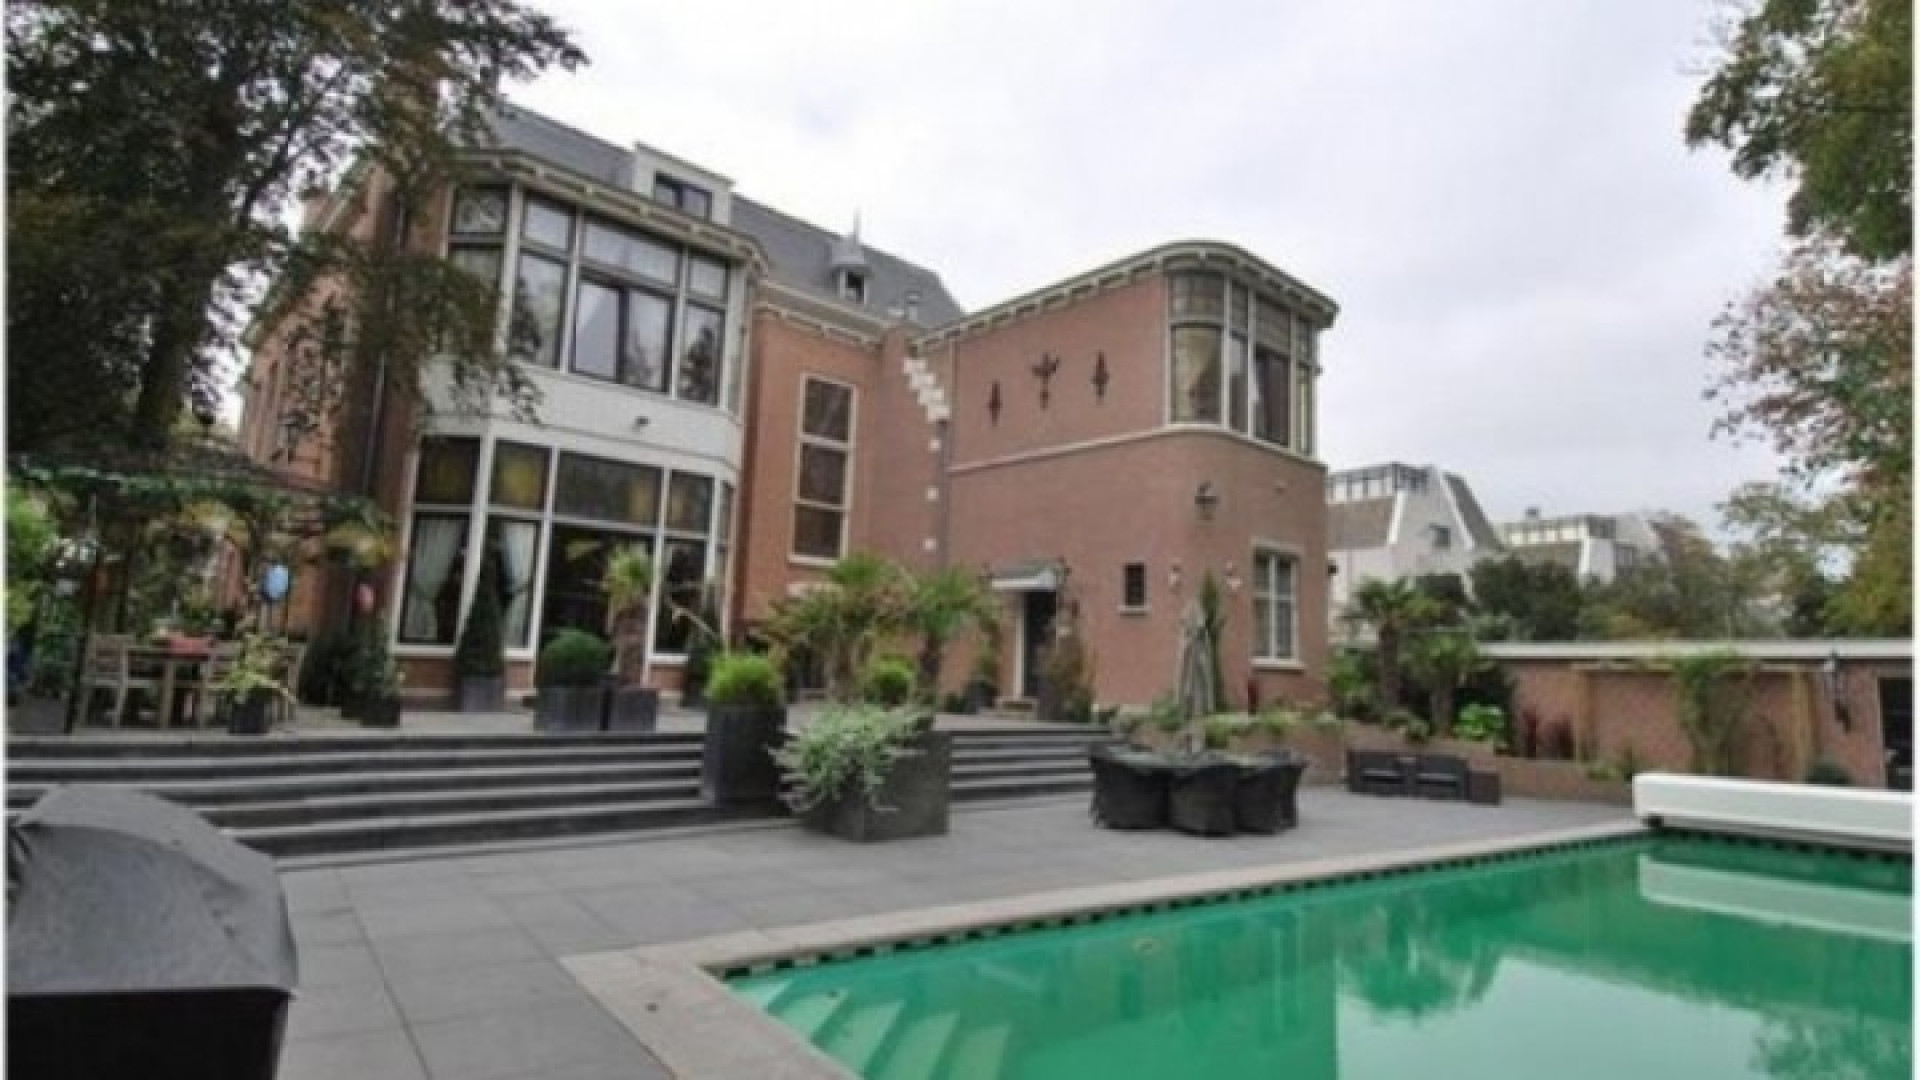 Topvoetbal trainer Martin Jol zet zijn Haagse miljoenenvilla te huur. Zie foto's